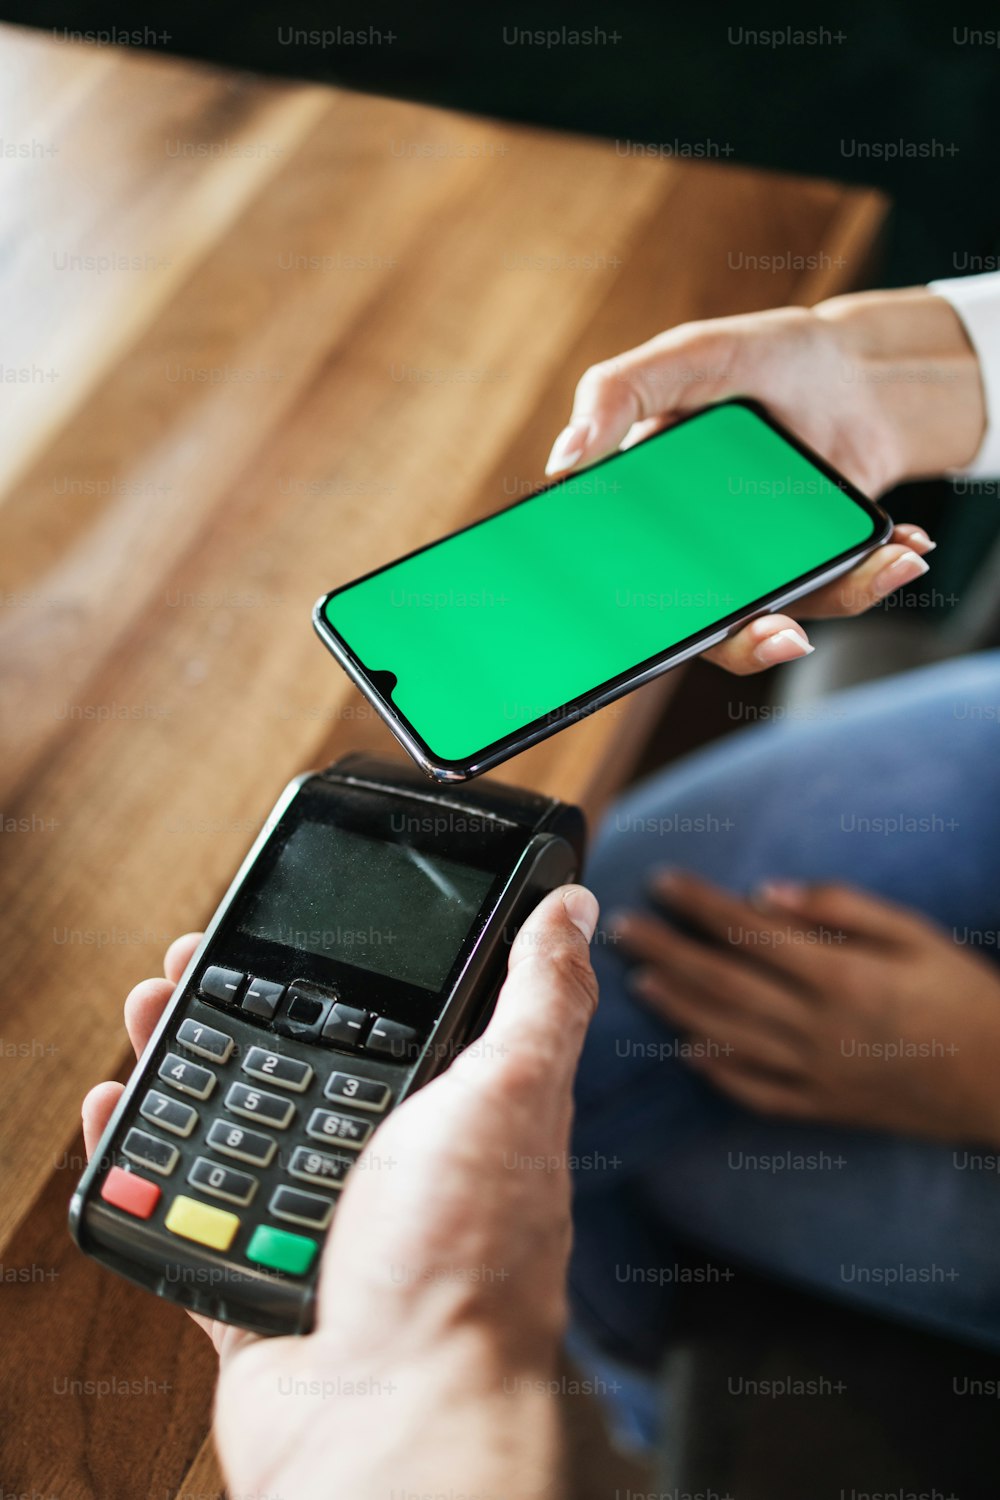 Cliente que realiza el pago en una cafetería o restaurante moderno con un teléfono inteligente utilizando la tecnología inalámbrica NFC (comunicación de campo cercano). Primer plano. Concepto de tecnología de consumo.